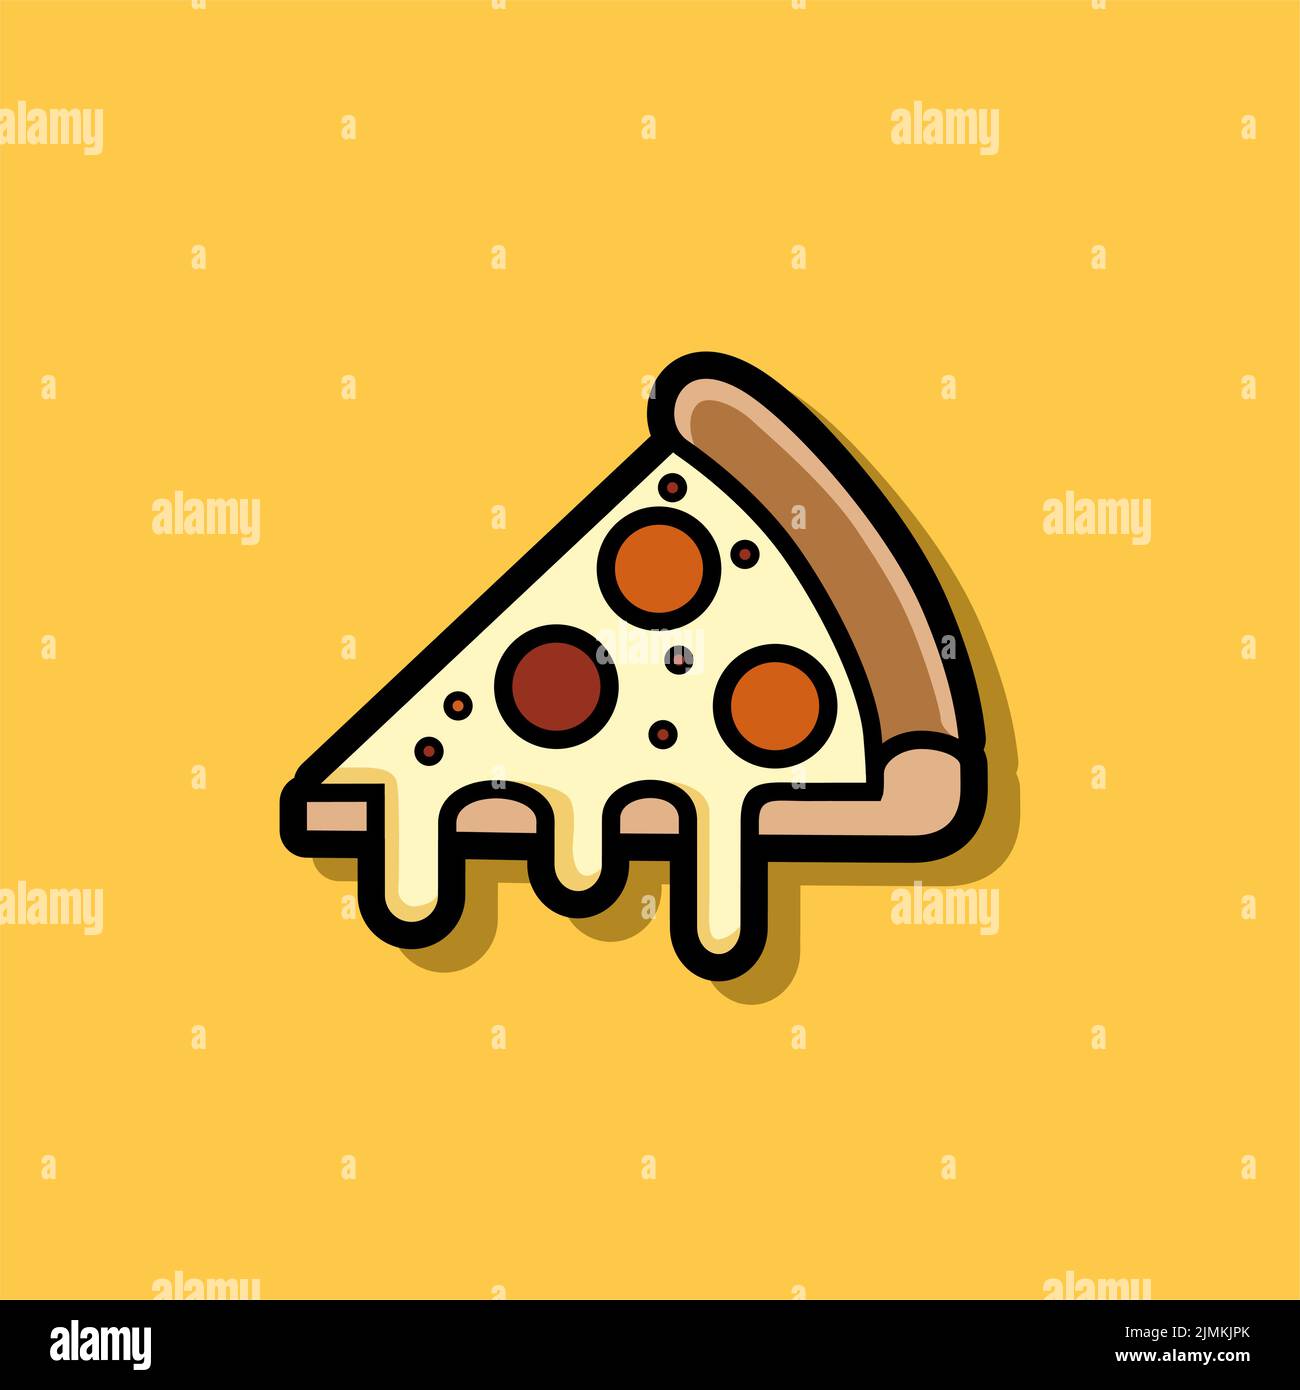 Ilustración de pizza Slice para el menú italiano de pizza o Pizzeria Company Ilustración del Vector